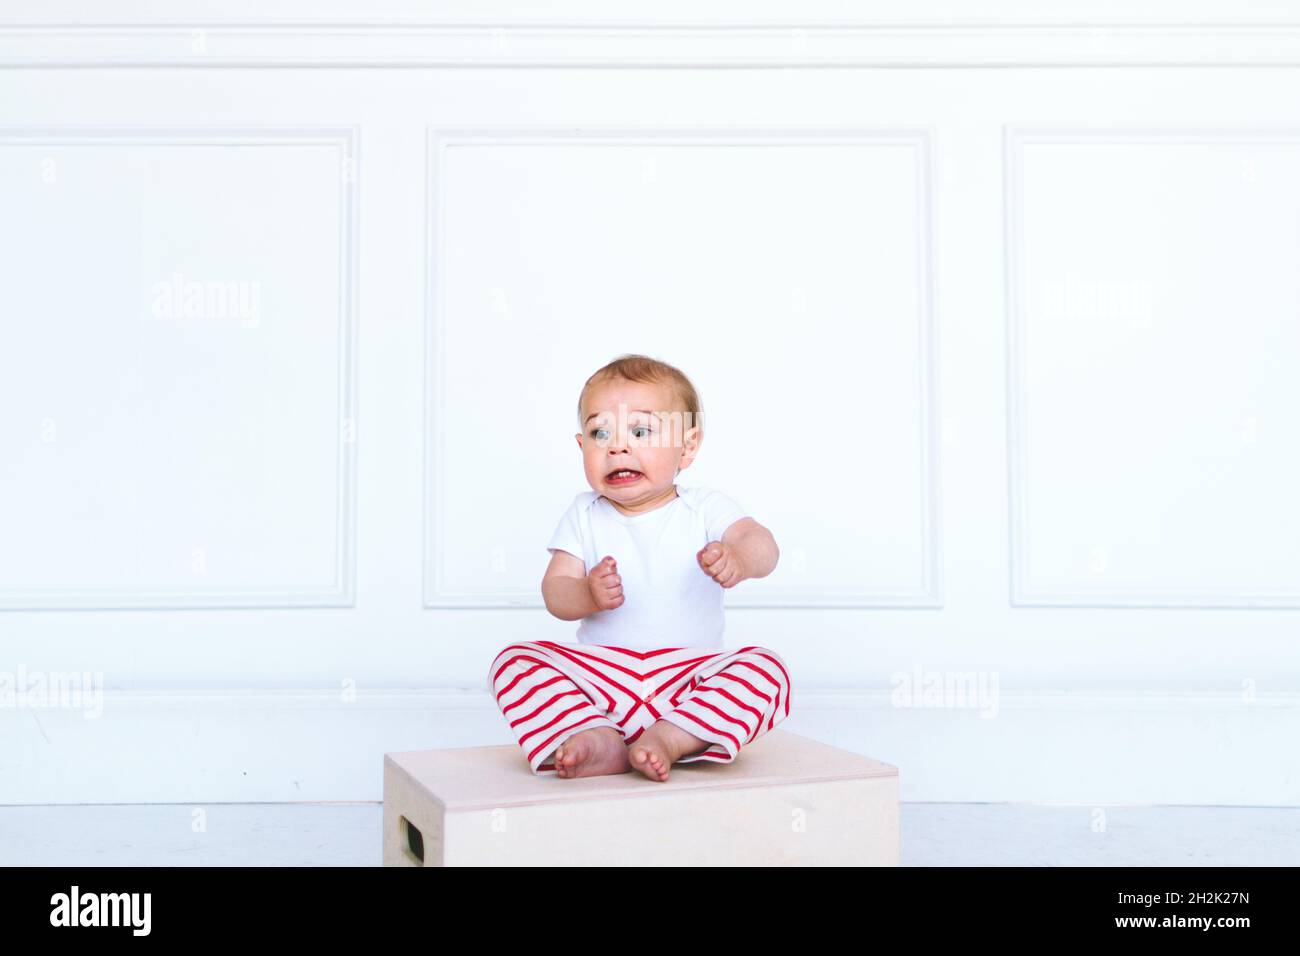 Un bambino fa un volto divertente in uno studio fotografico Foto Stock